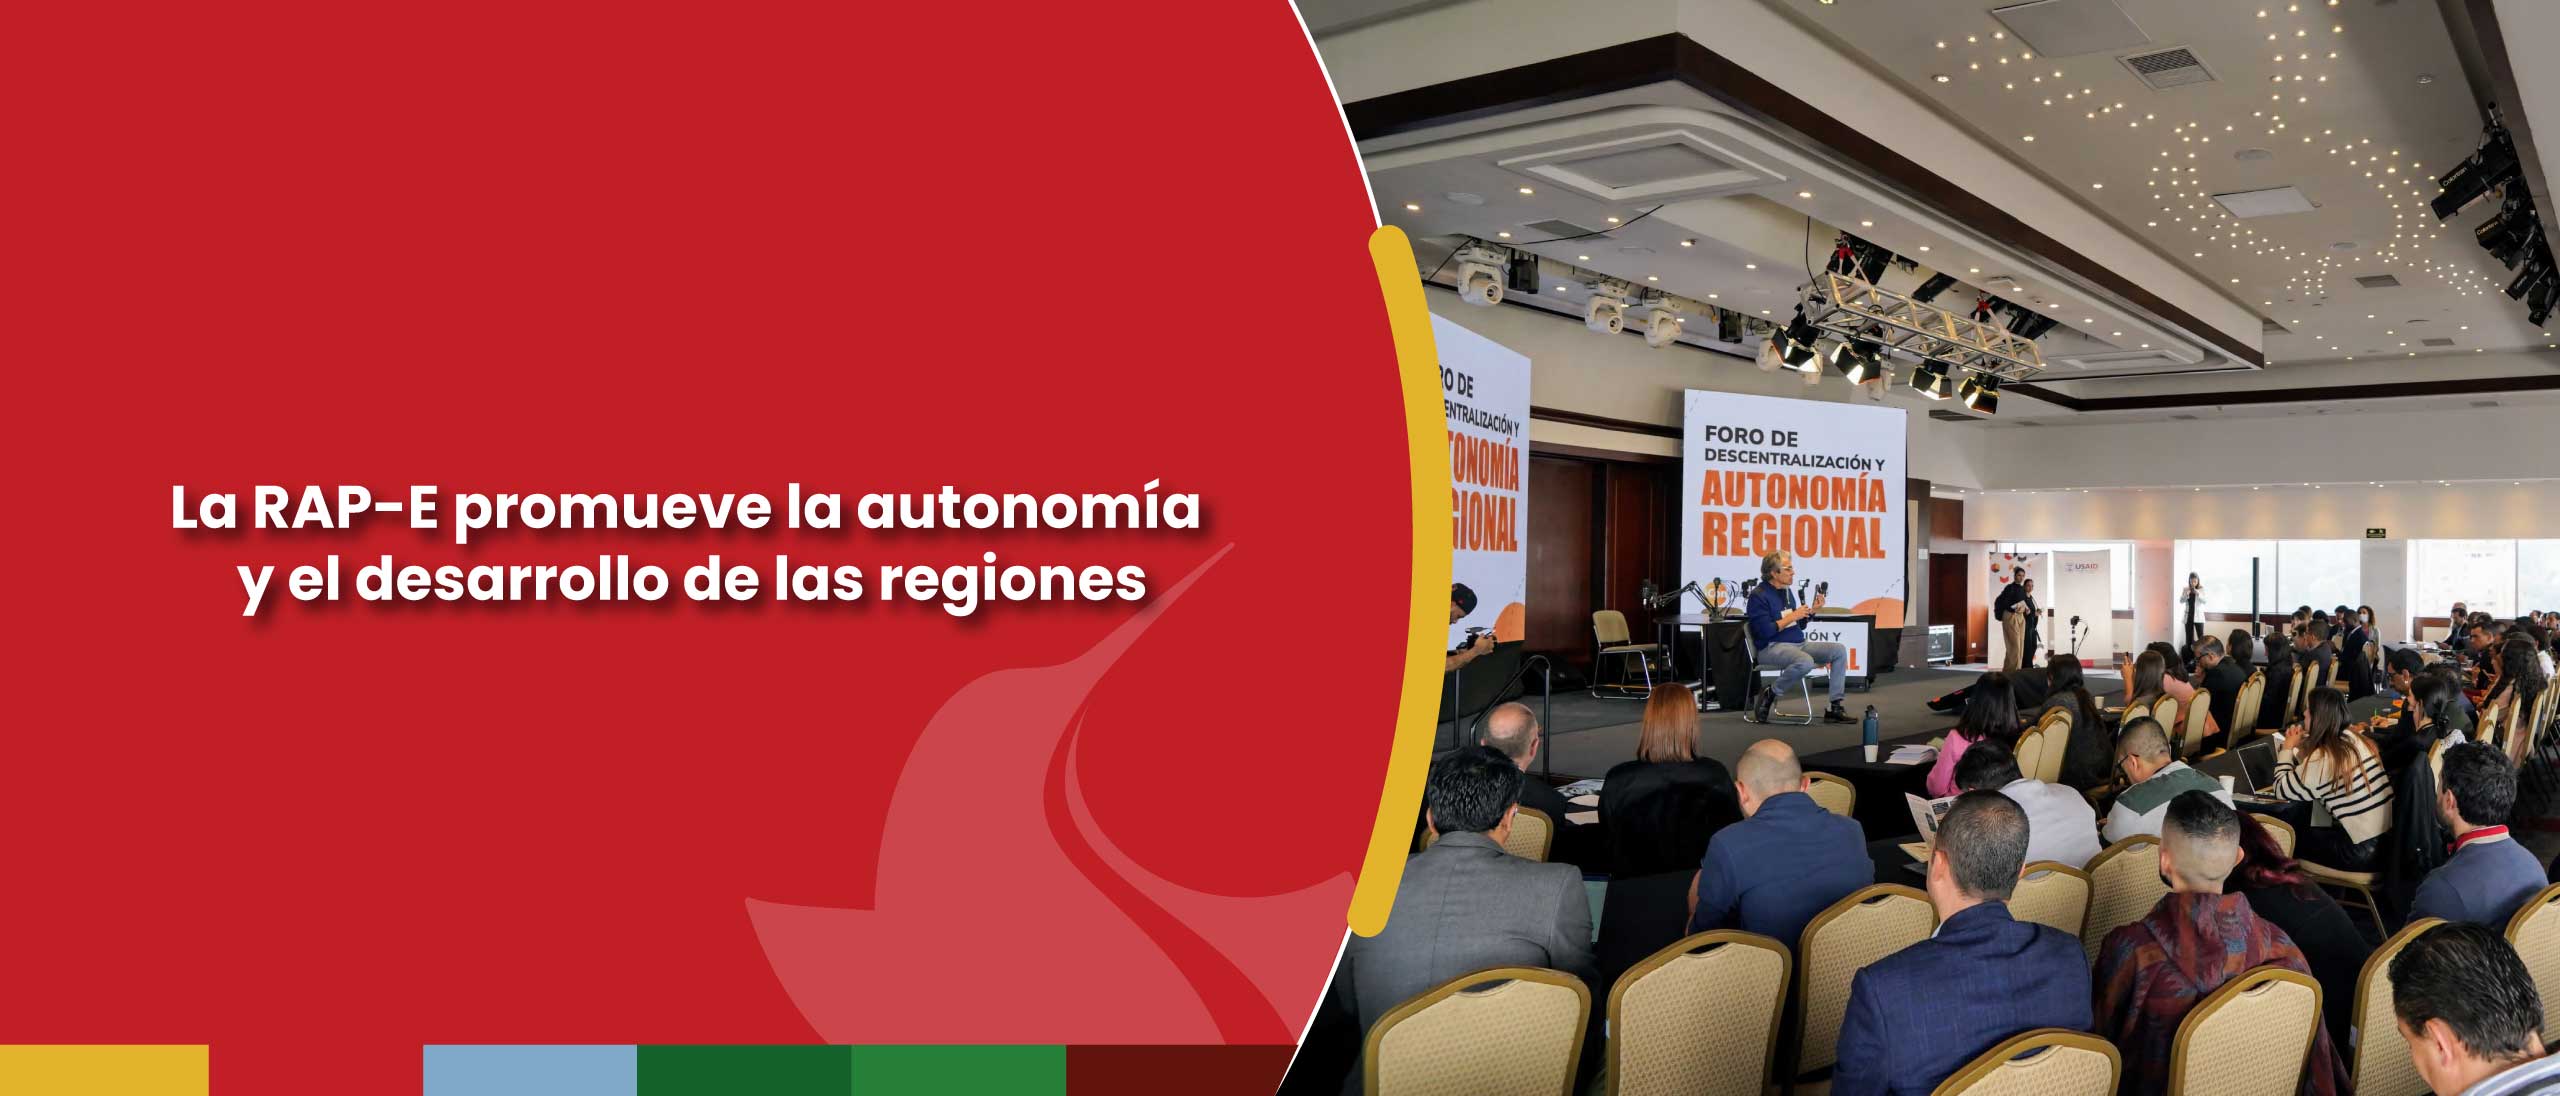 La RAP-E promueve la autonomía y el desarrollo de las regiones